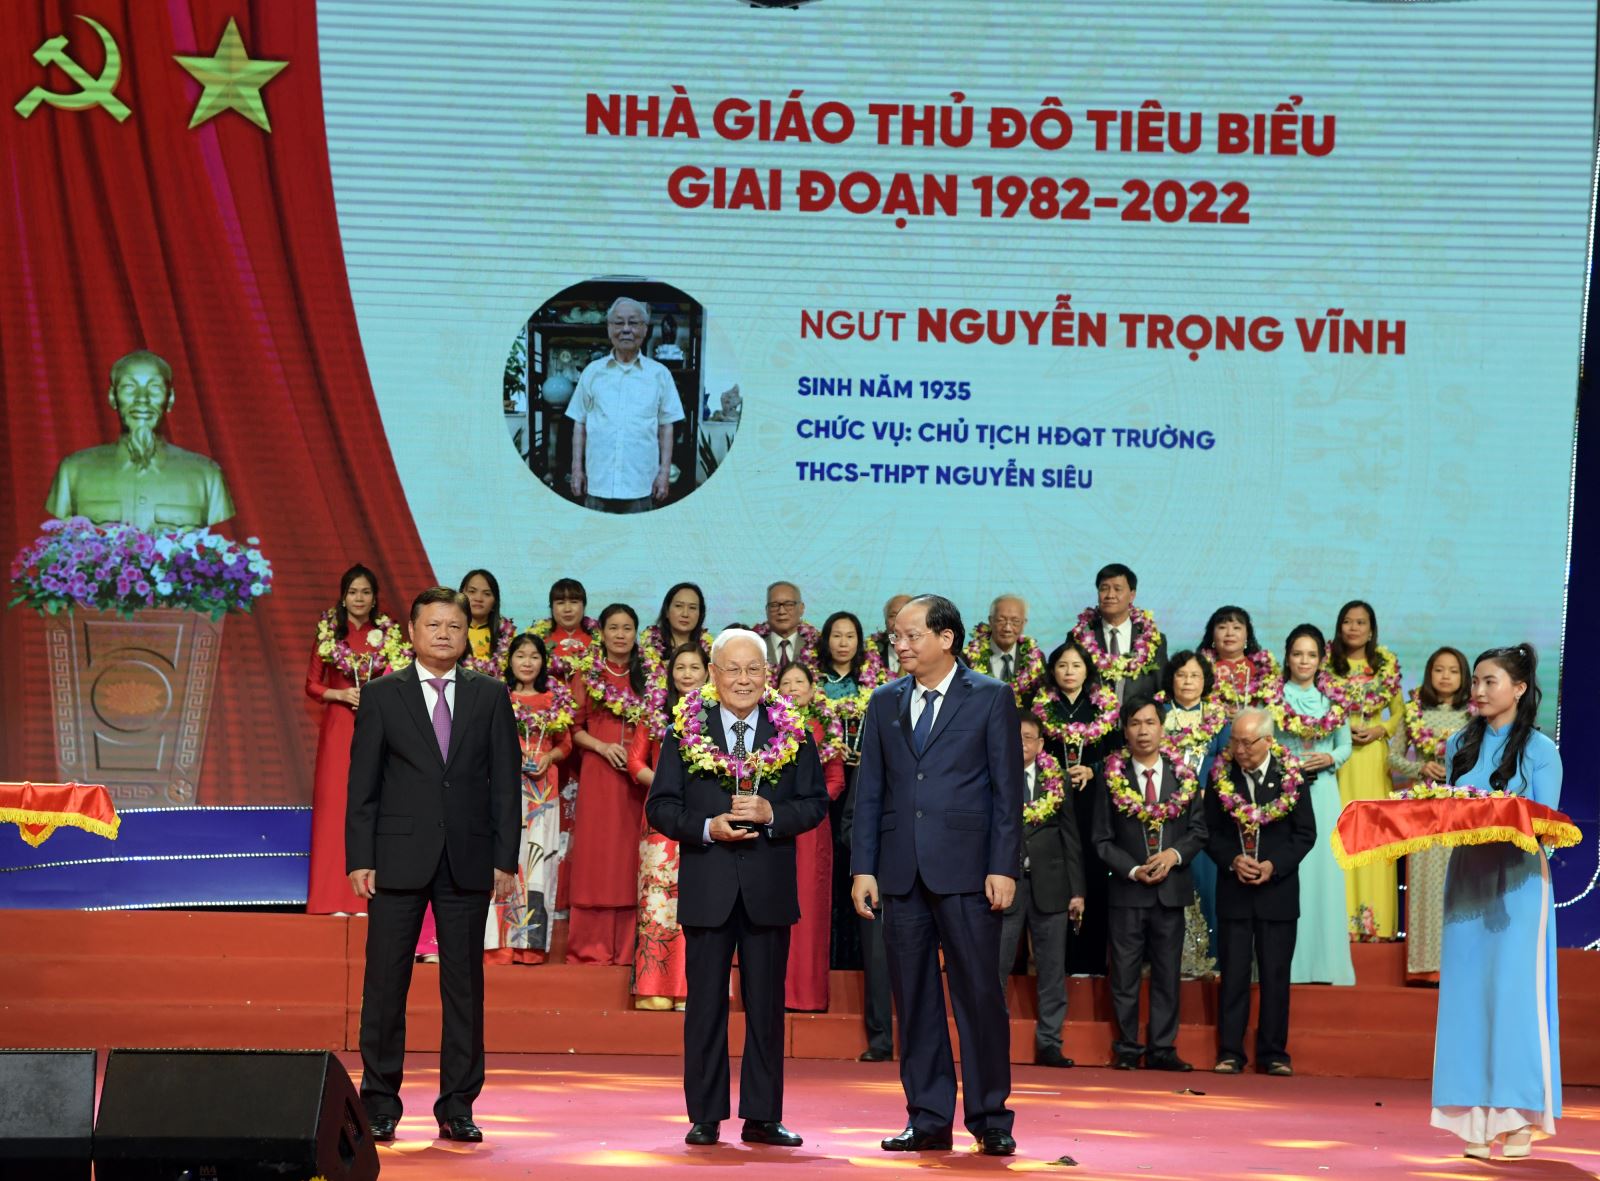 NGƯT Nguyễn Trọng Vĩnh nhận Kỷ niệm chương nhà giáo tiêu biểu Thủ đô 1982-2022